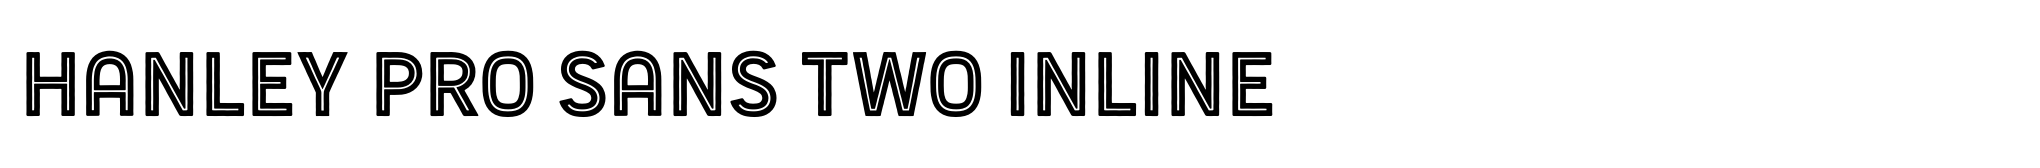 Hanley Pro Sans Two Inline image